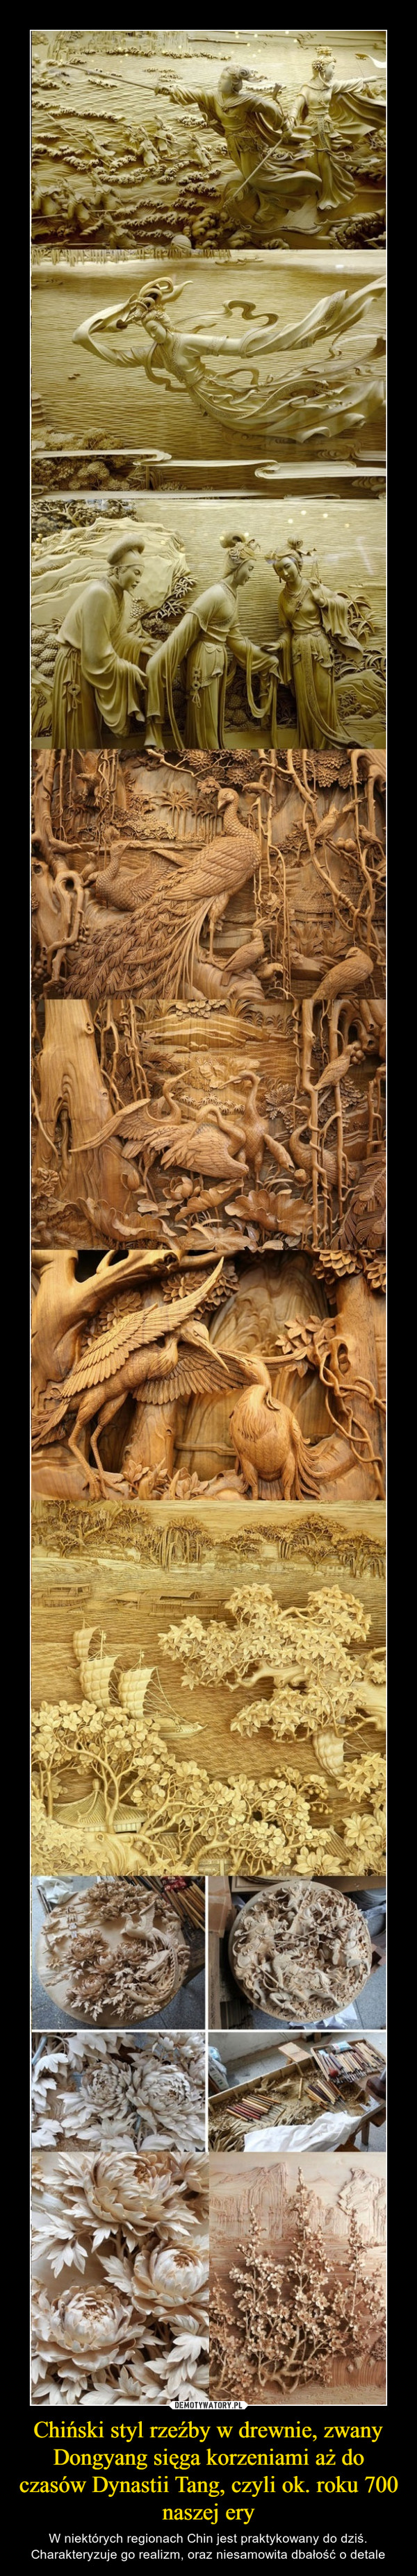 Chiński styl rzeźby w drewnie, zwany Dongyang sięga korzeniami aż do czasów Dynastii Tang, czyli ok. roku 700 naszej ery – W niektórych regionach Chin jest praktykowany do dziś. Charakteryzuje go realizm, oraz niesamowita dbałość o detale 